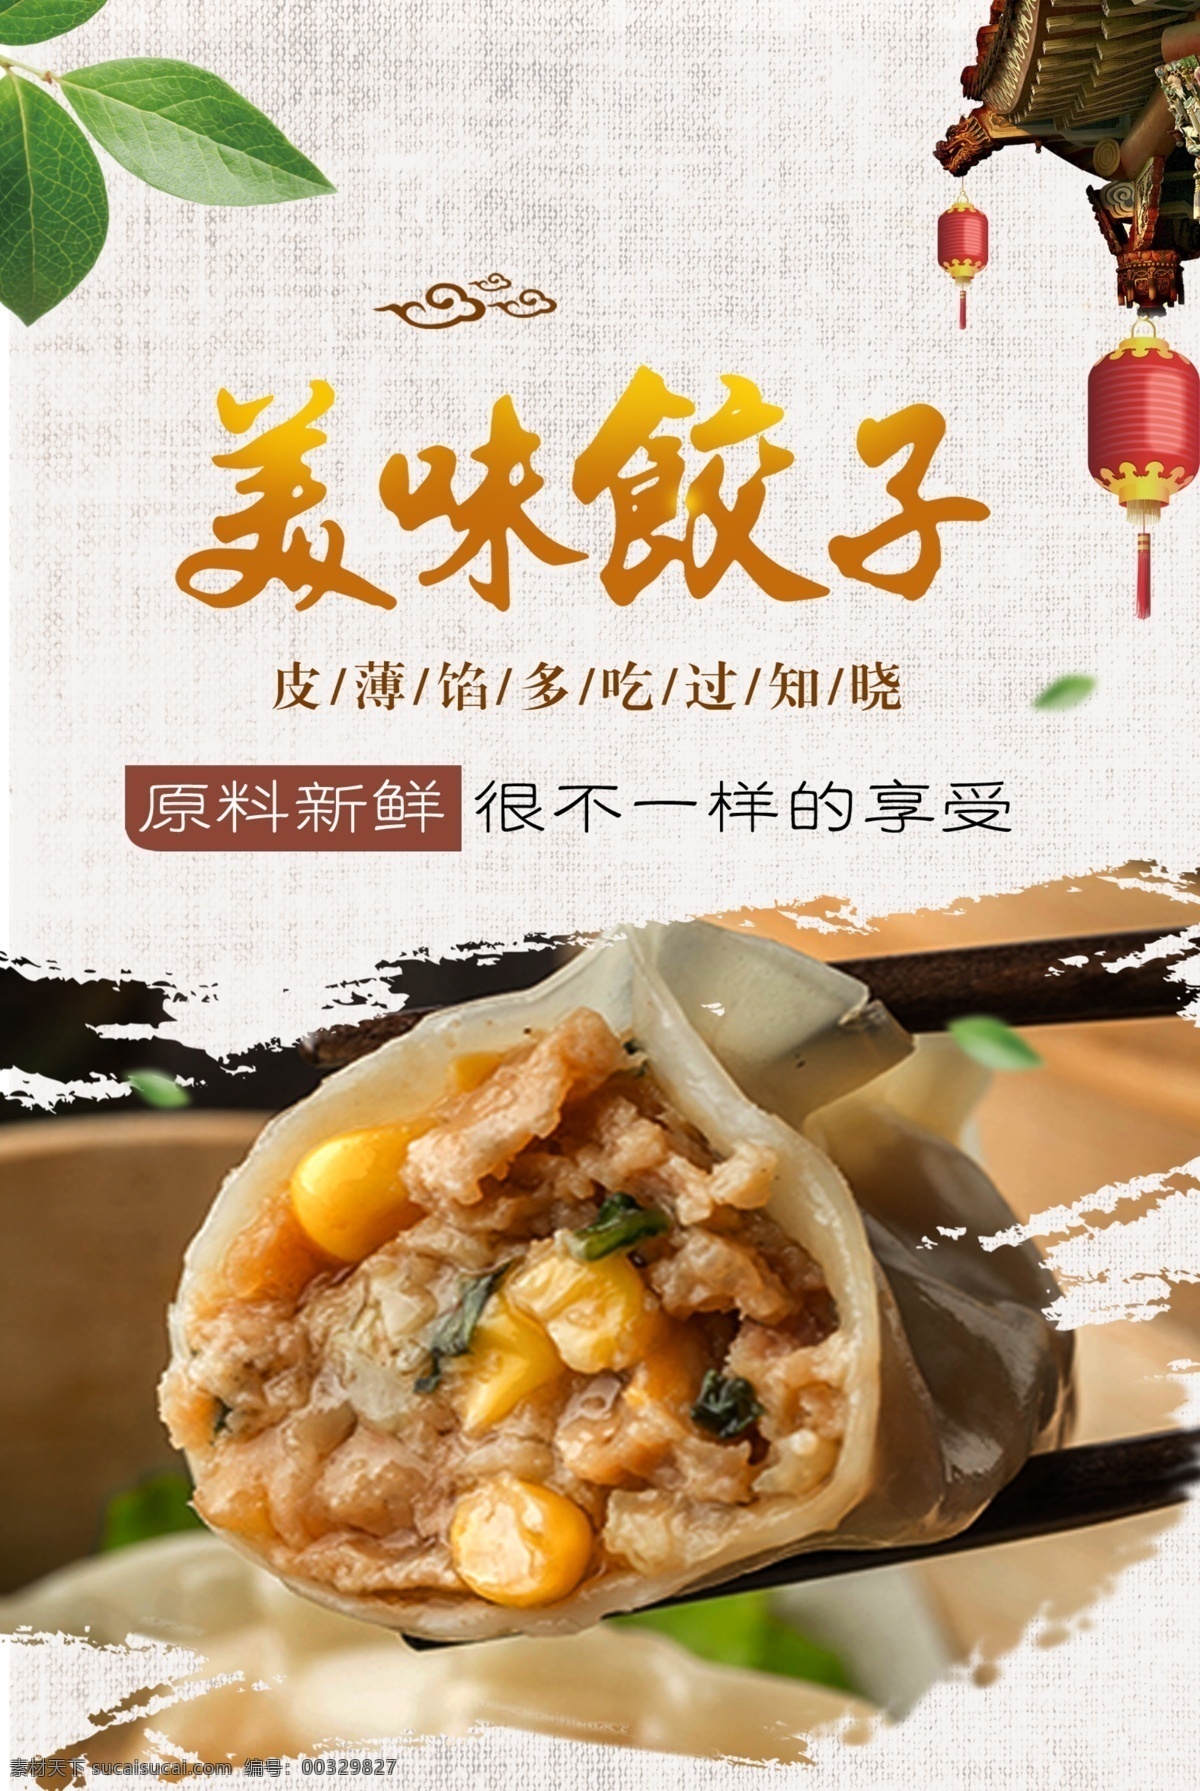 美味 饺子 美食 海报 好吃不过饺子 水饺 蒸饺 中国美食 传承特色